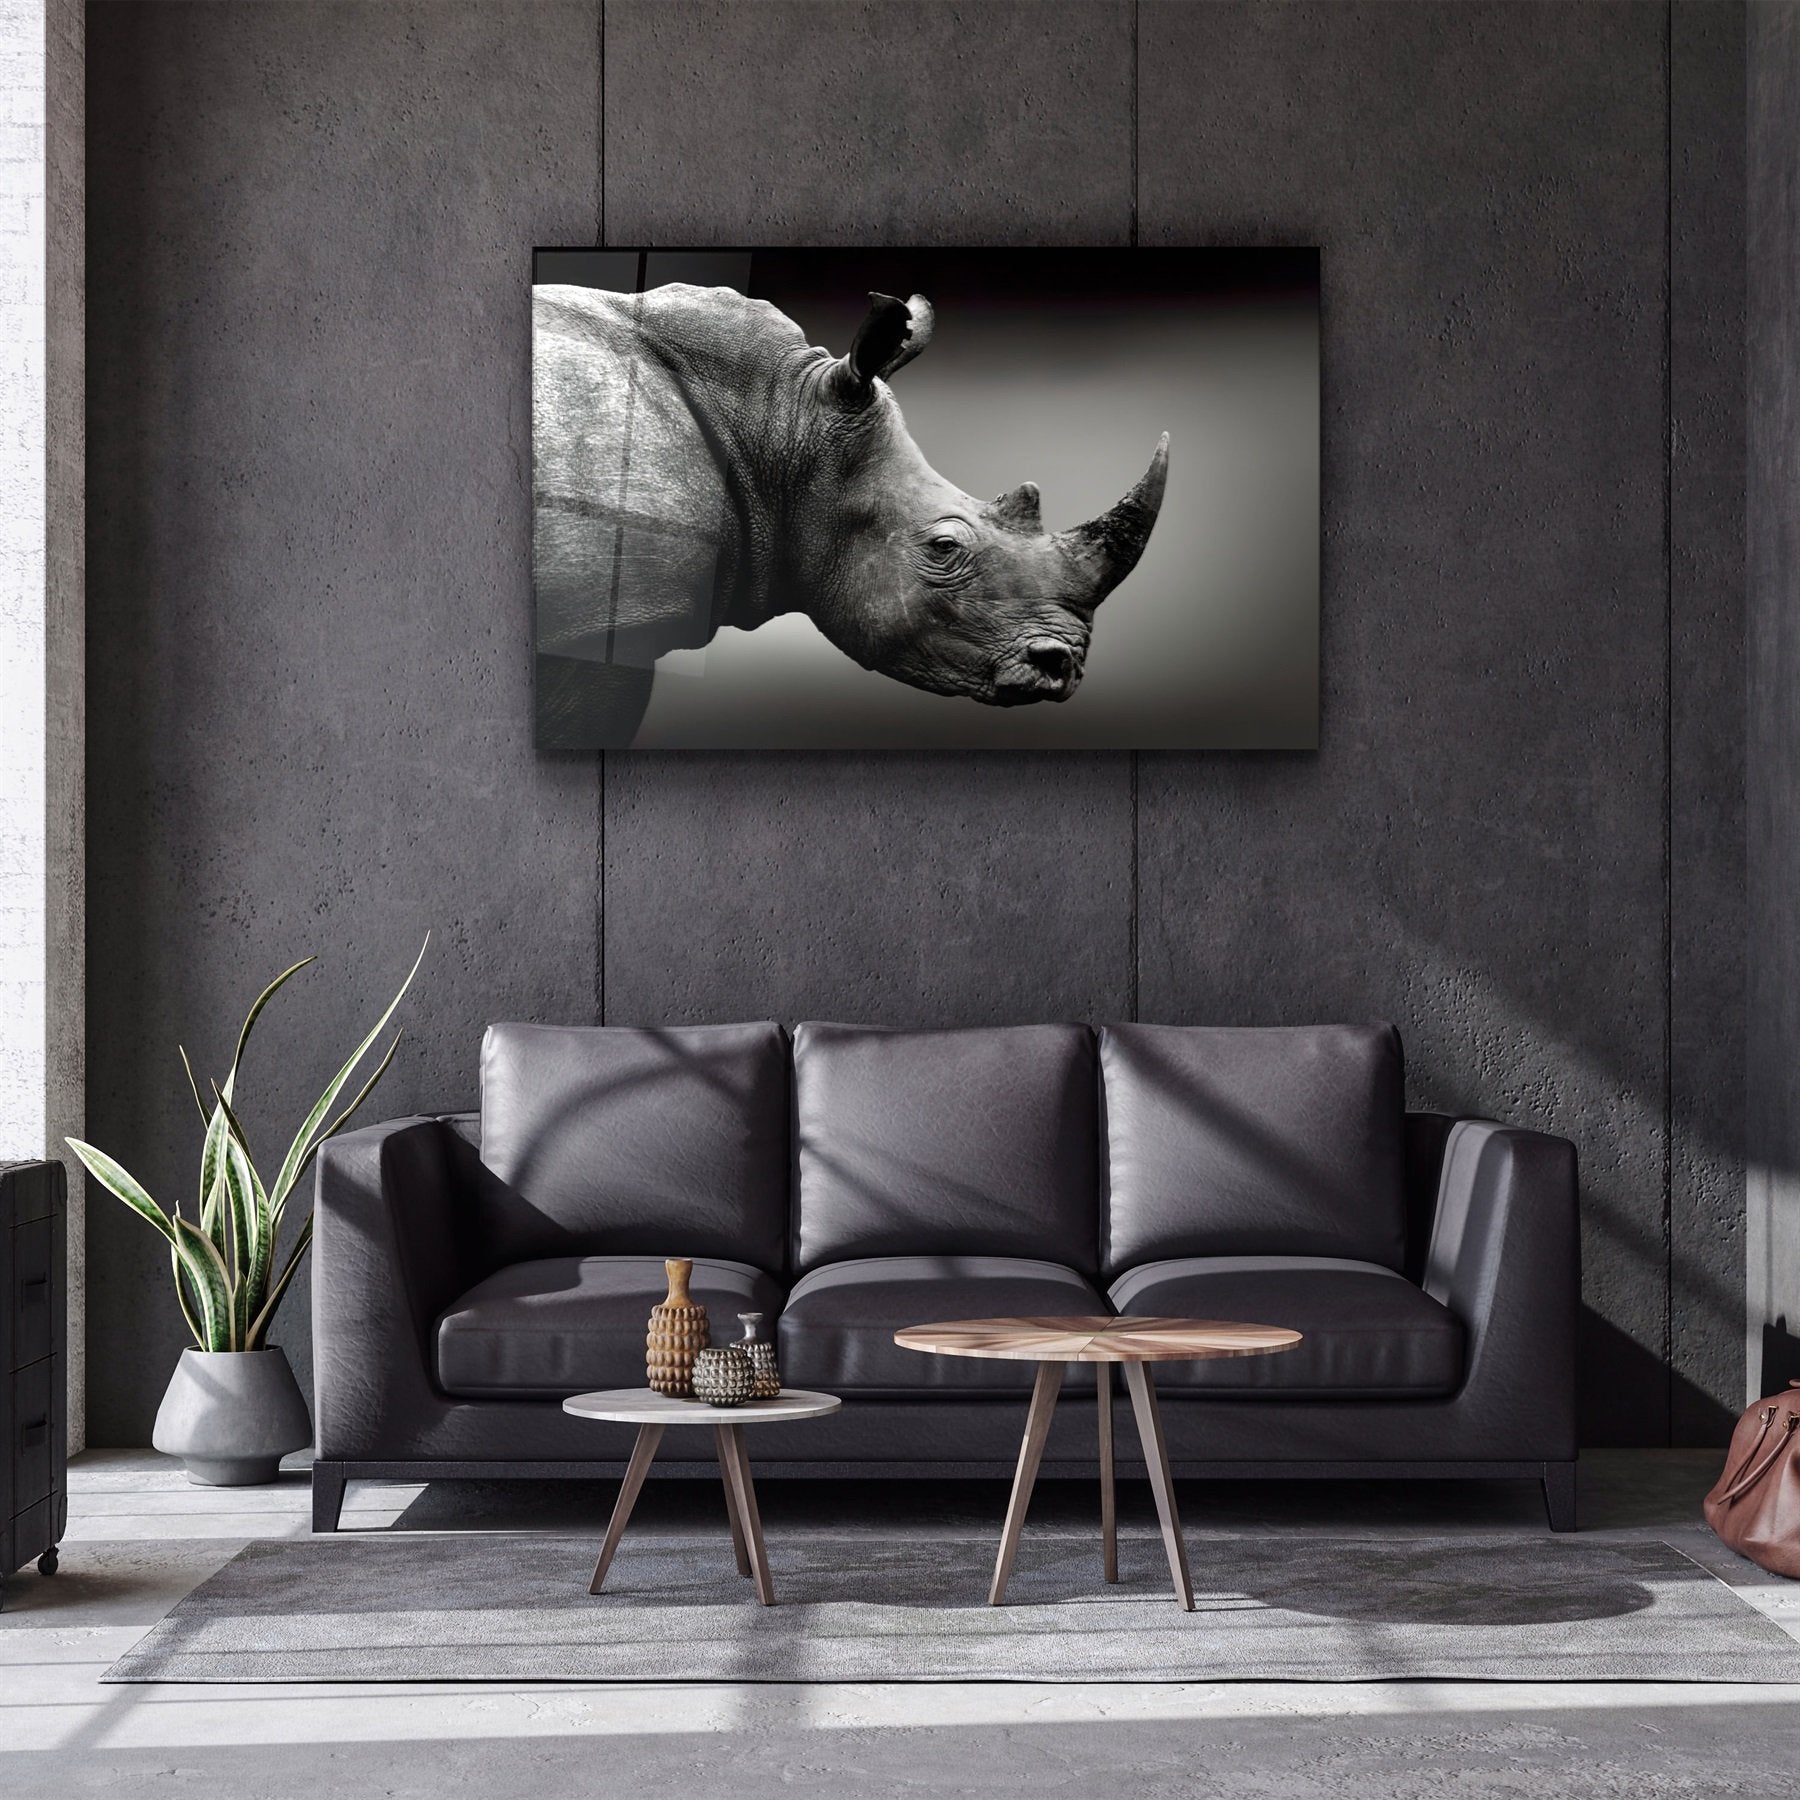 ・"Rhino V2"・Glass Wall Art